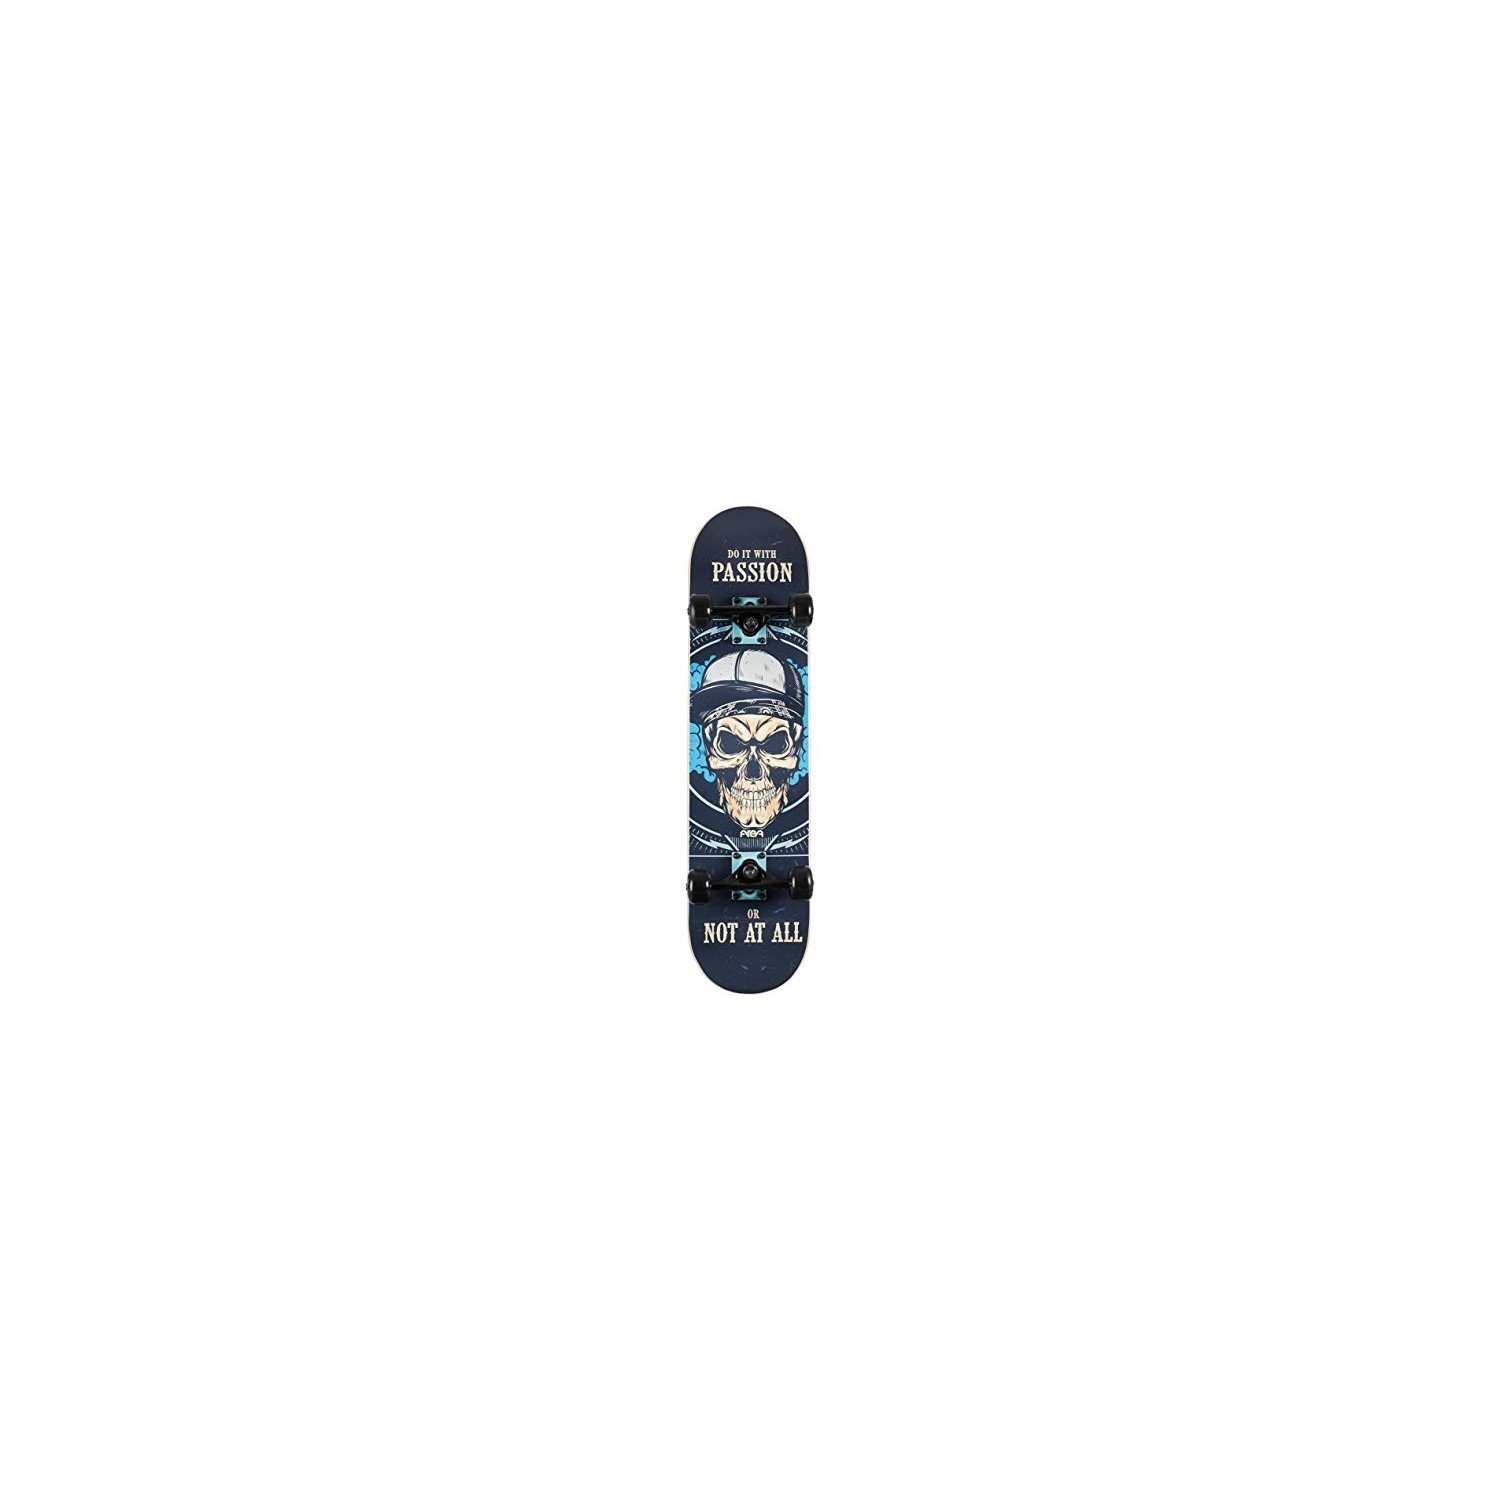 AREA17 Skateboard Skateboard Skateboard Passion - 000 - / -